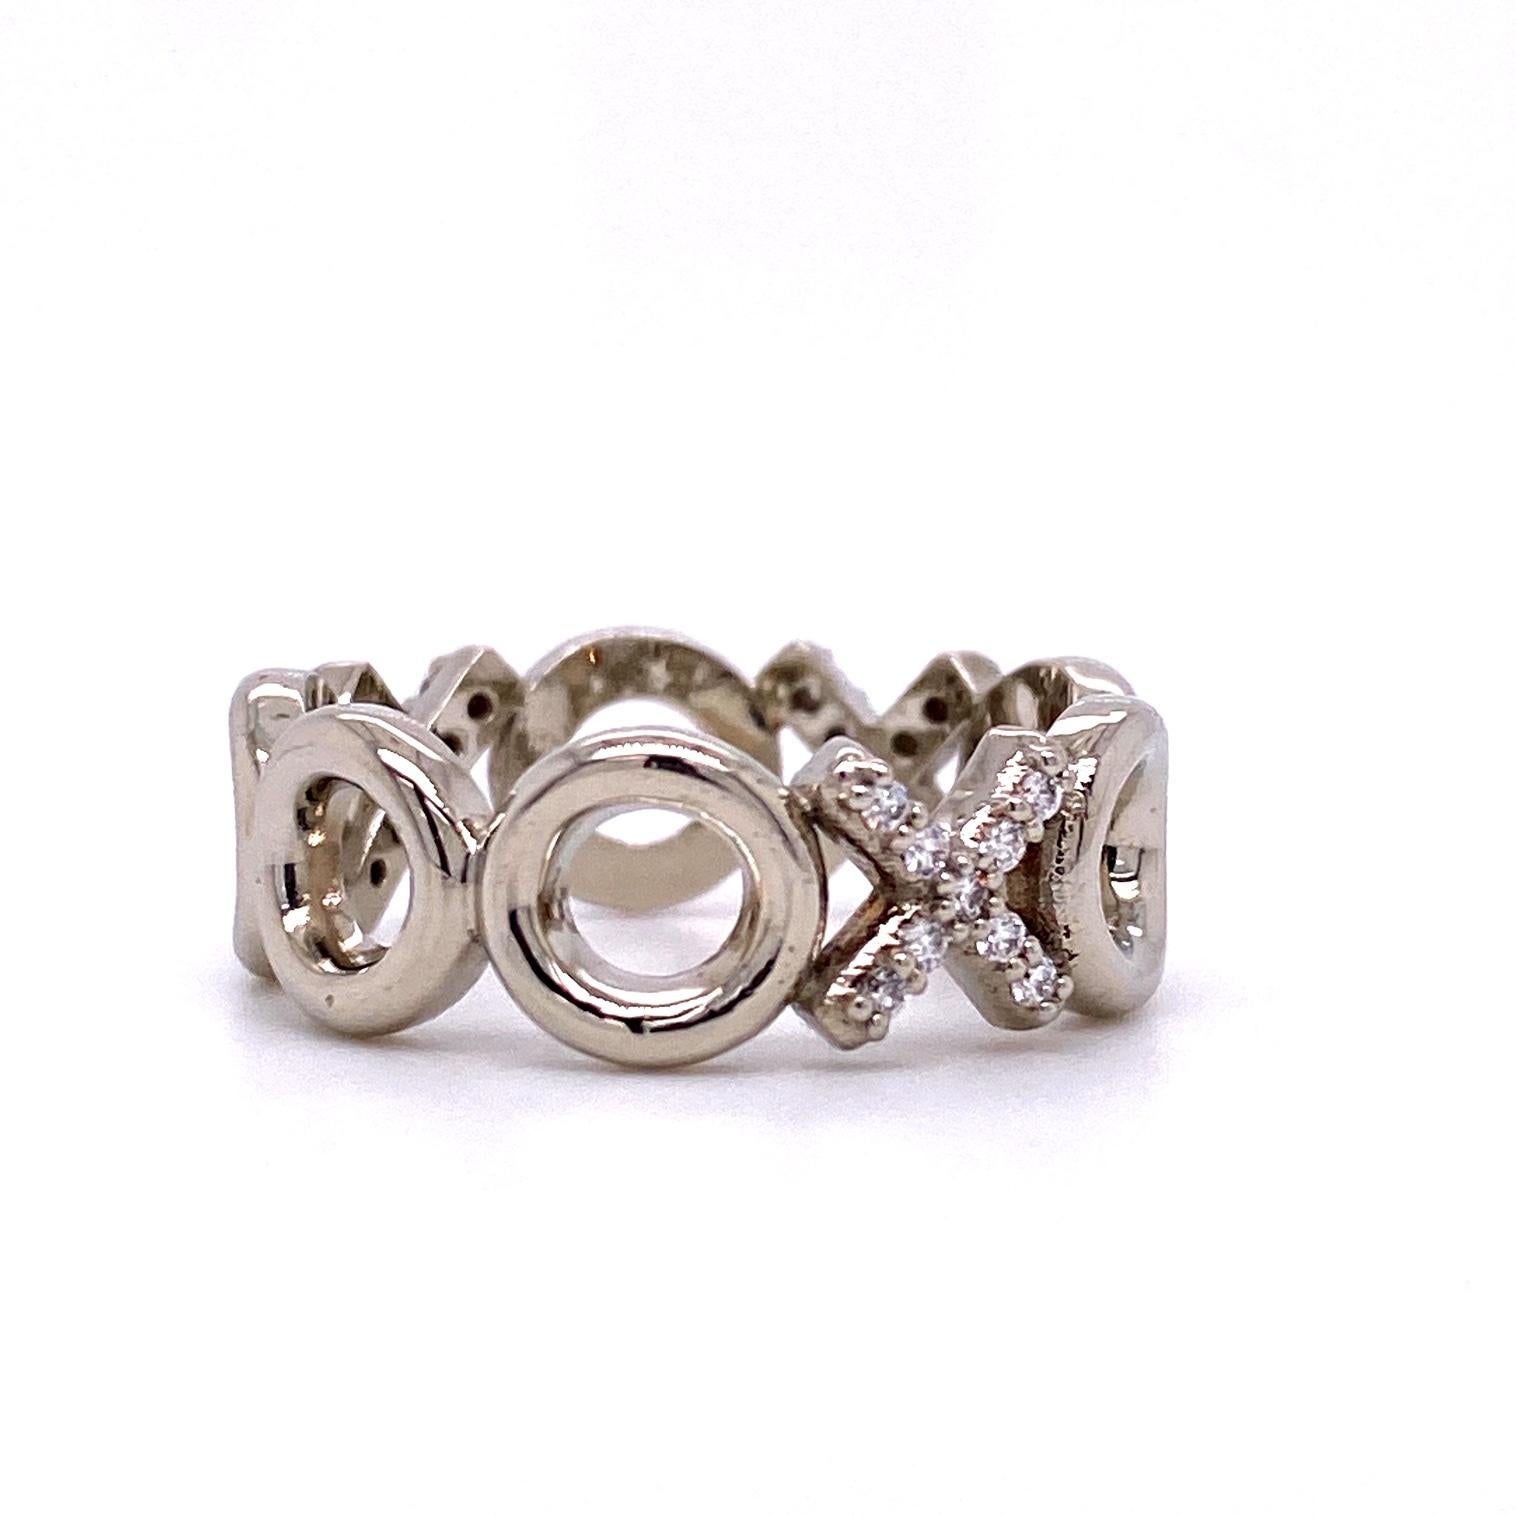 Bracelet XO en or blanc 18k serti de 27 diamants ronds de 1,1 mm de taille pleine sur les X 0,14 poids total en carats G-H couleur VS pureté. Bague taille 7.  Conçu et réalisé par Llyn Strong.